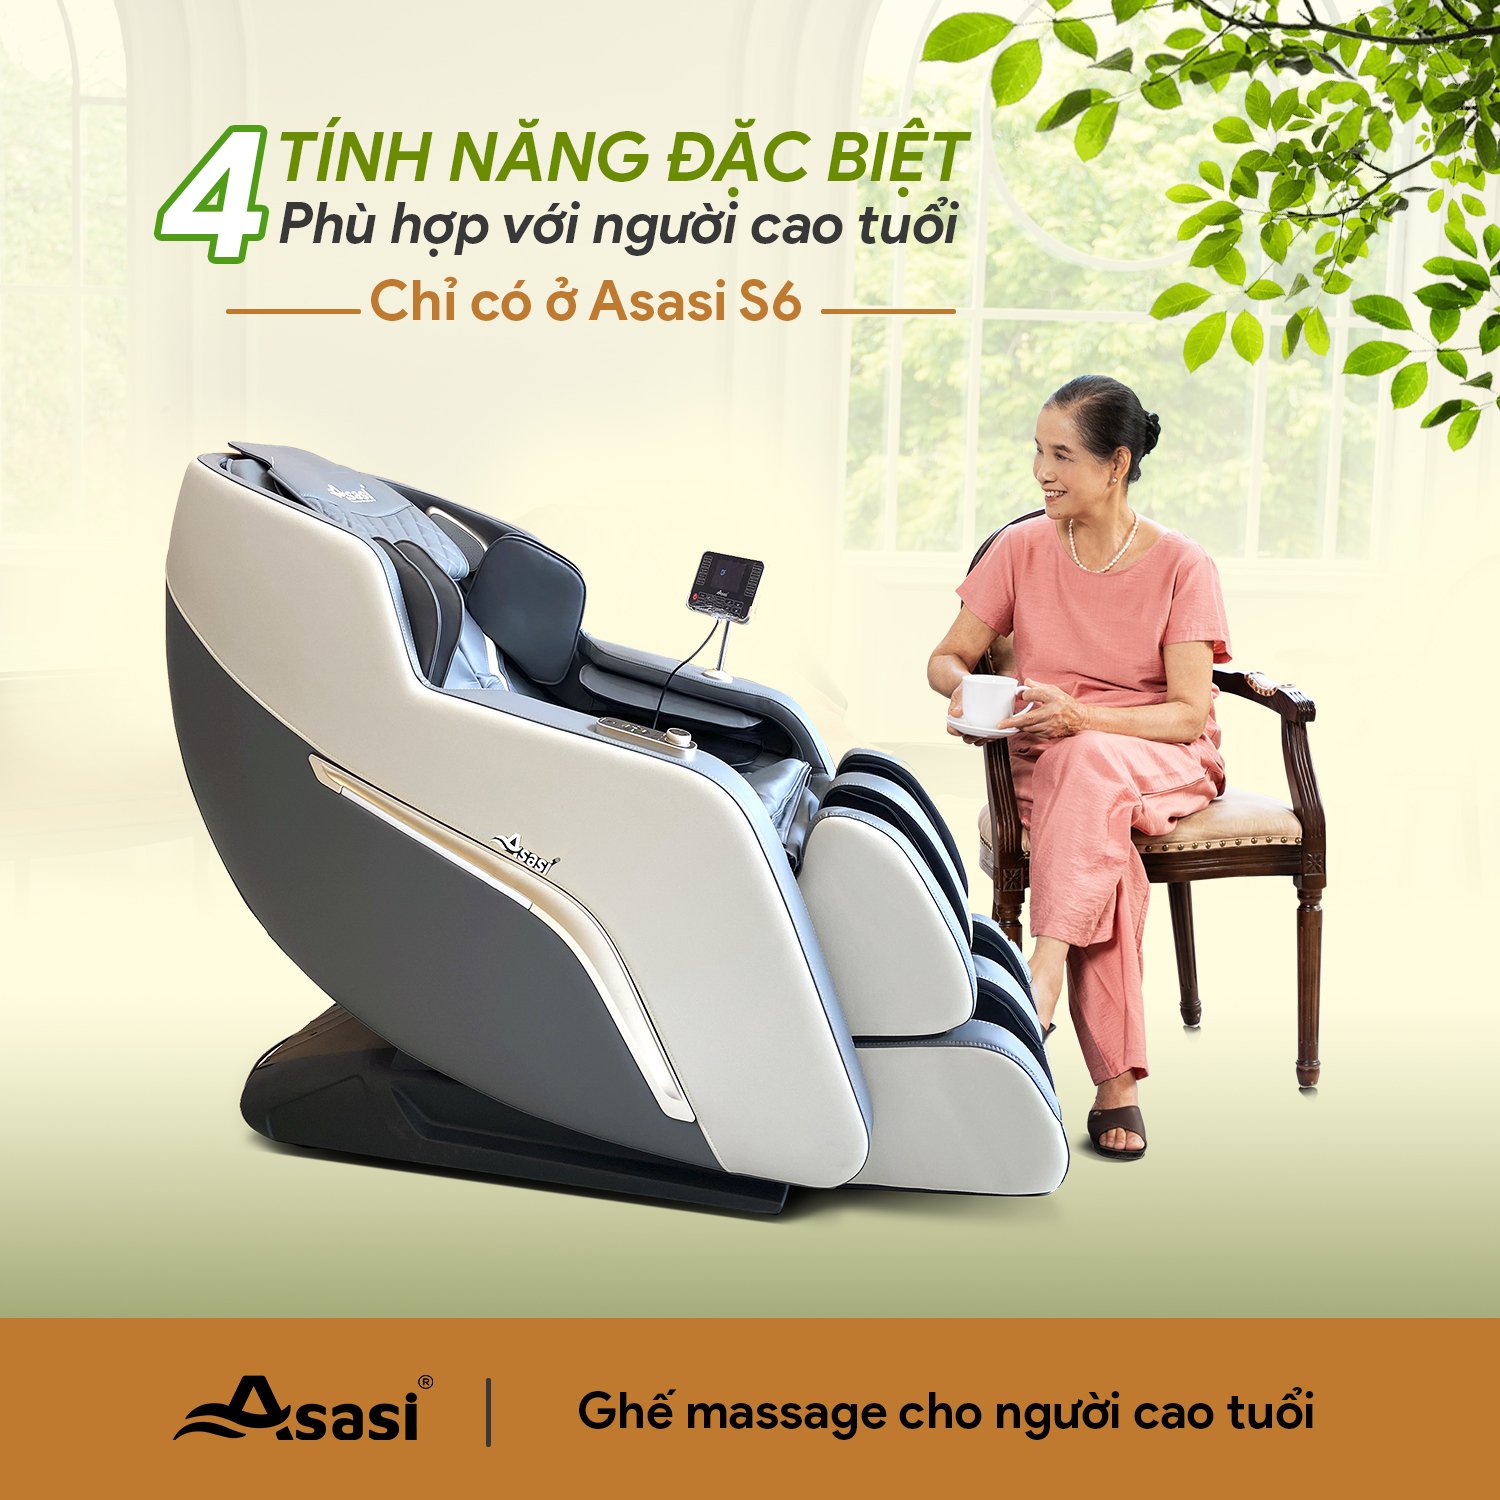 Ghế massage giá rẻ cho người cao tuổi có được trang bị con lăn 4D không?